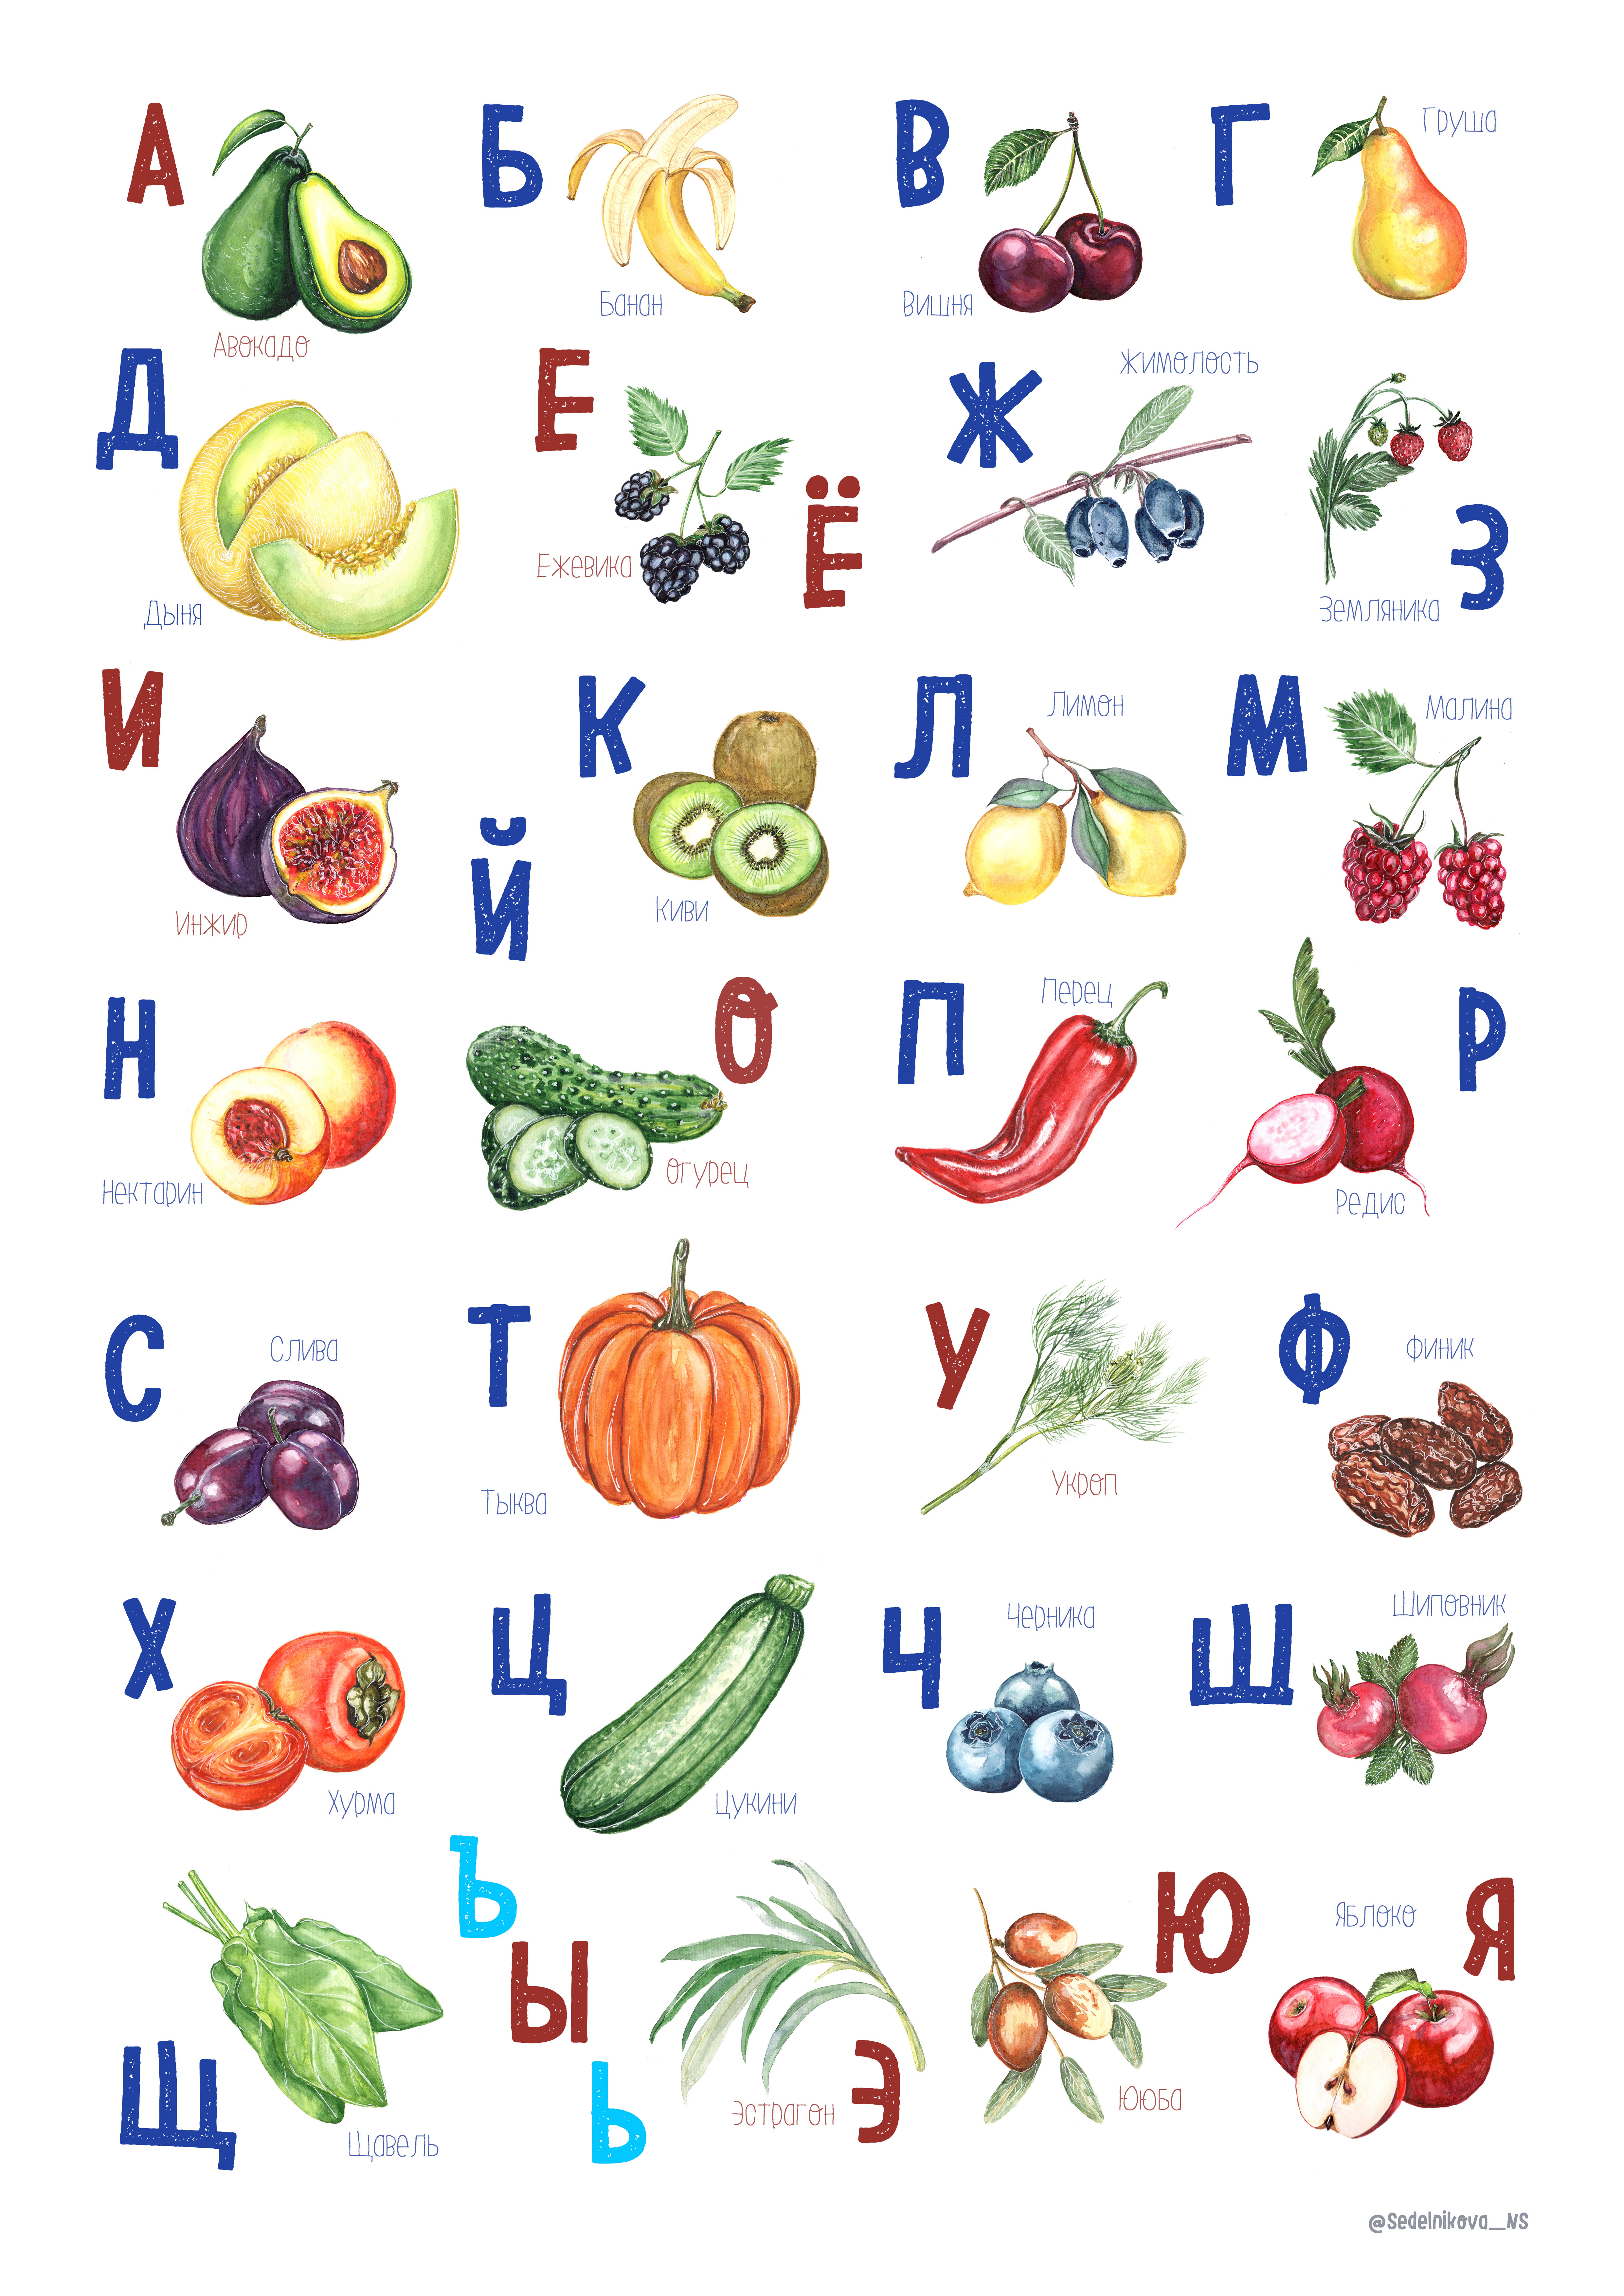 Есть фрукт на н. Азбука фрукты и овощи. Фрукты и овощи на букву а. Алфавит фрукты. Алфавит фрукты и овощи и ягоды.